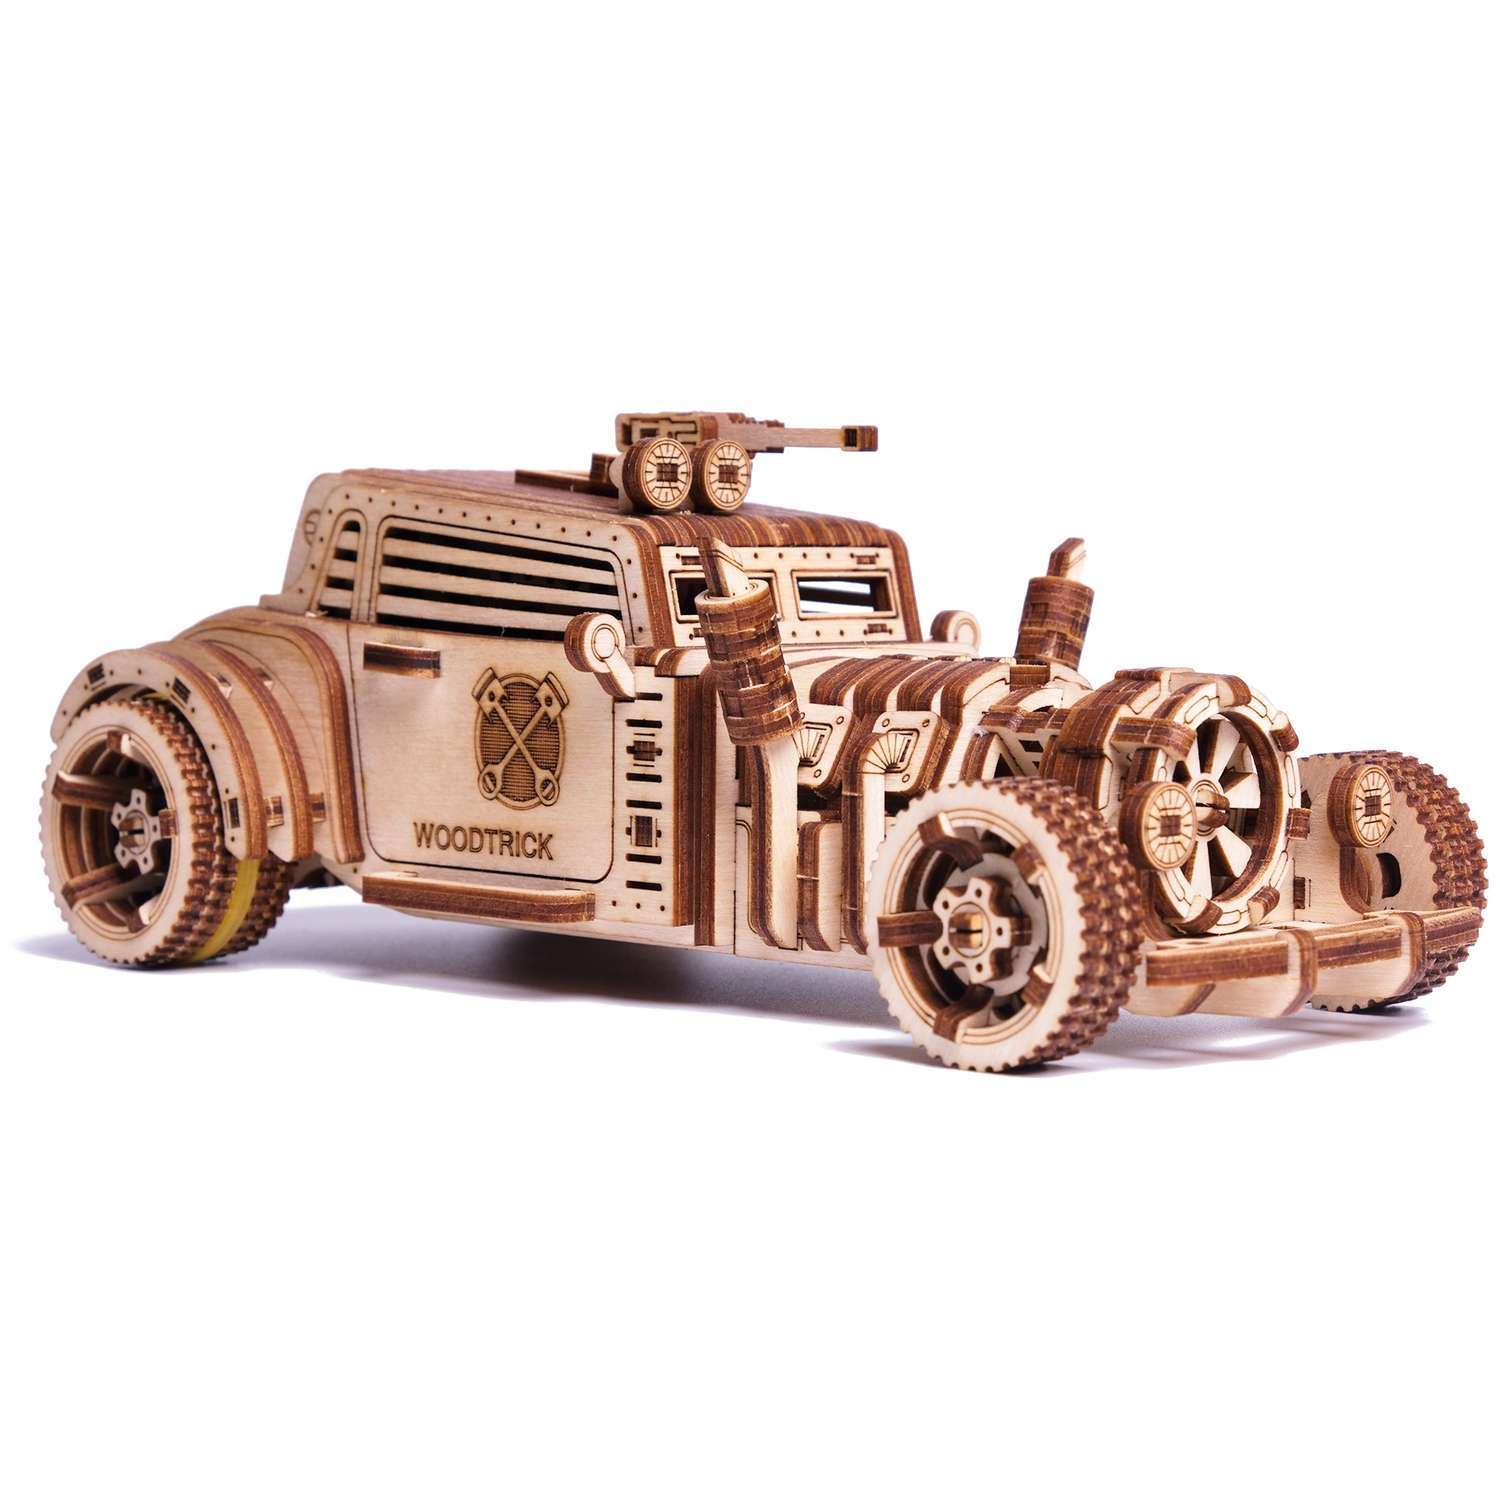 Сборная модель Wood Trick Механическая Машина Апокалипсис Родстер из дерева 1234-77 - фото 2